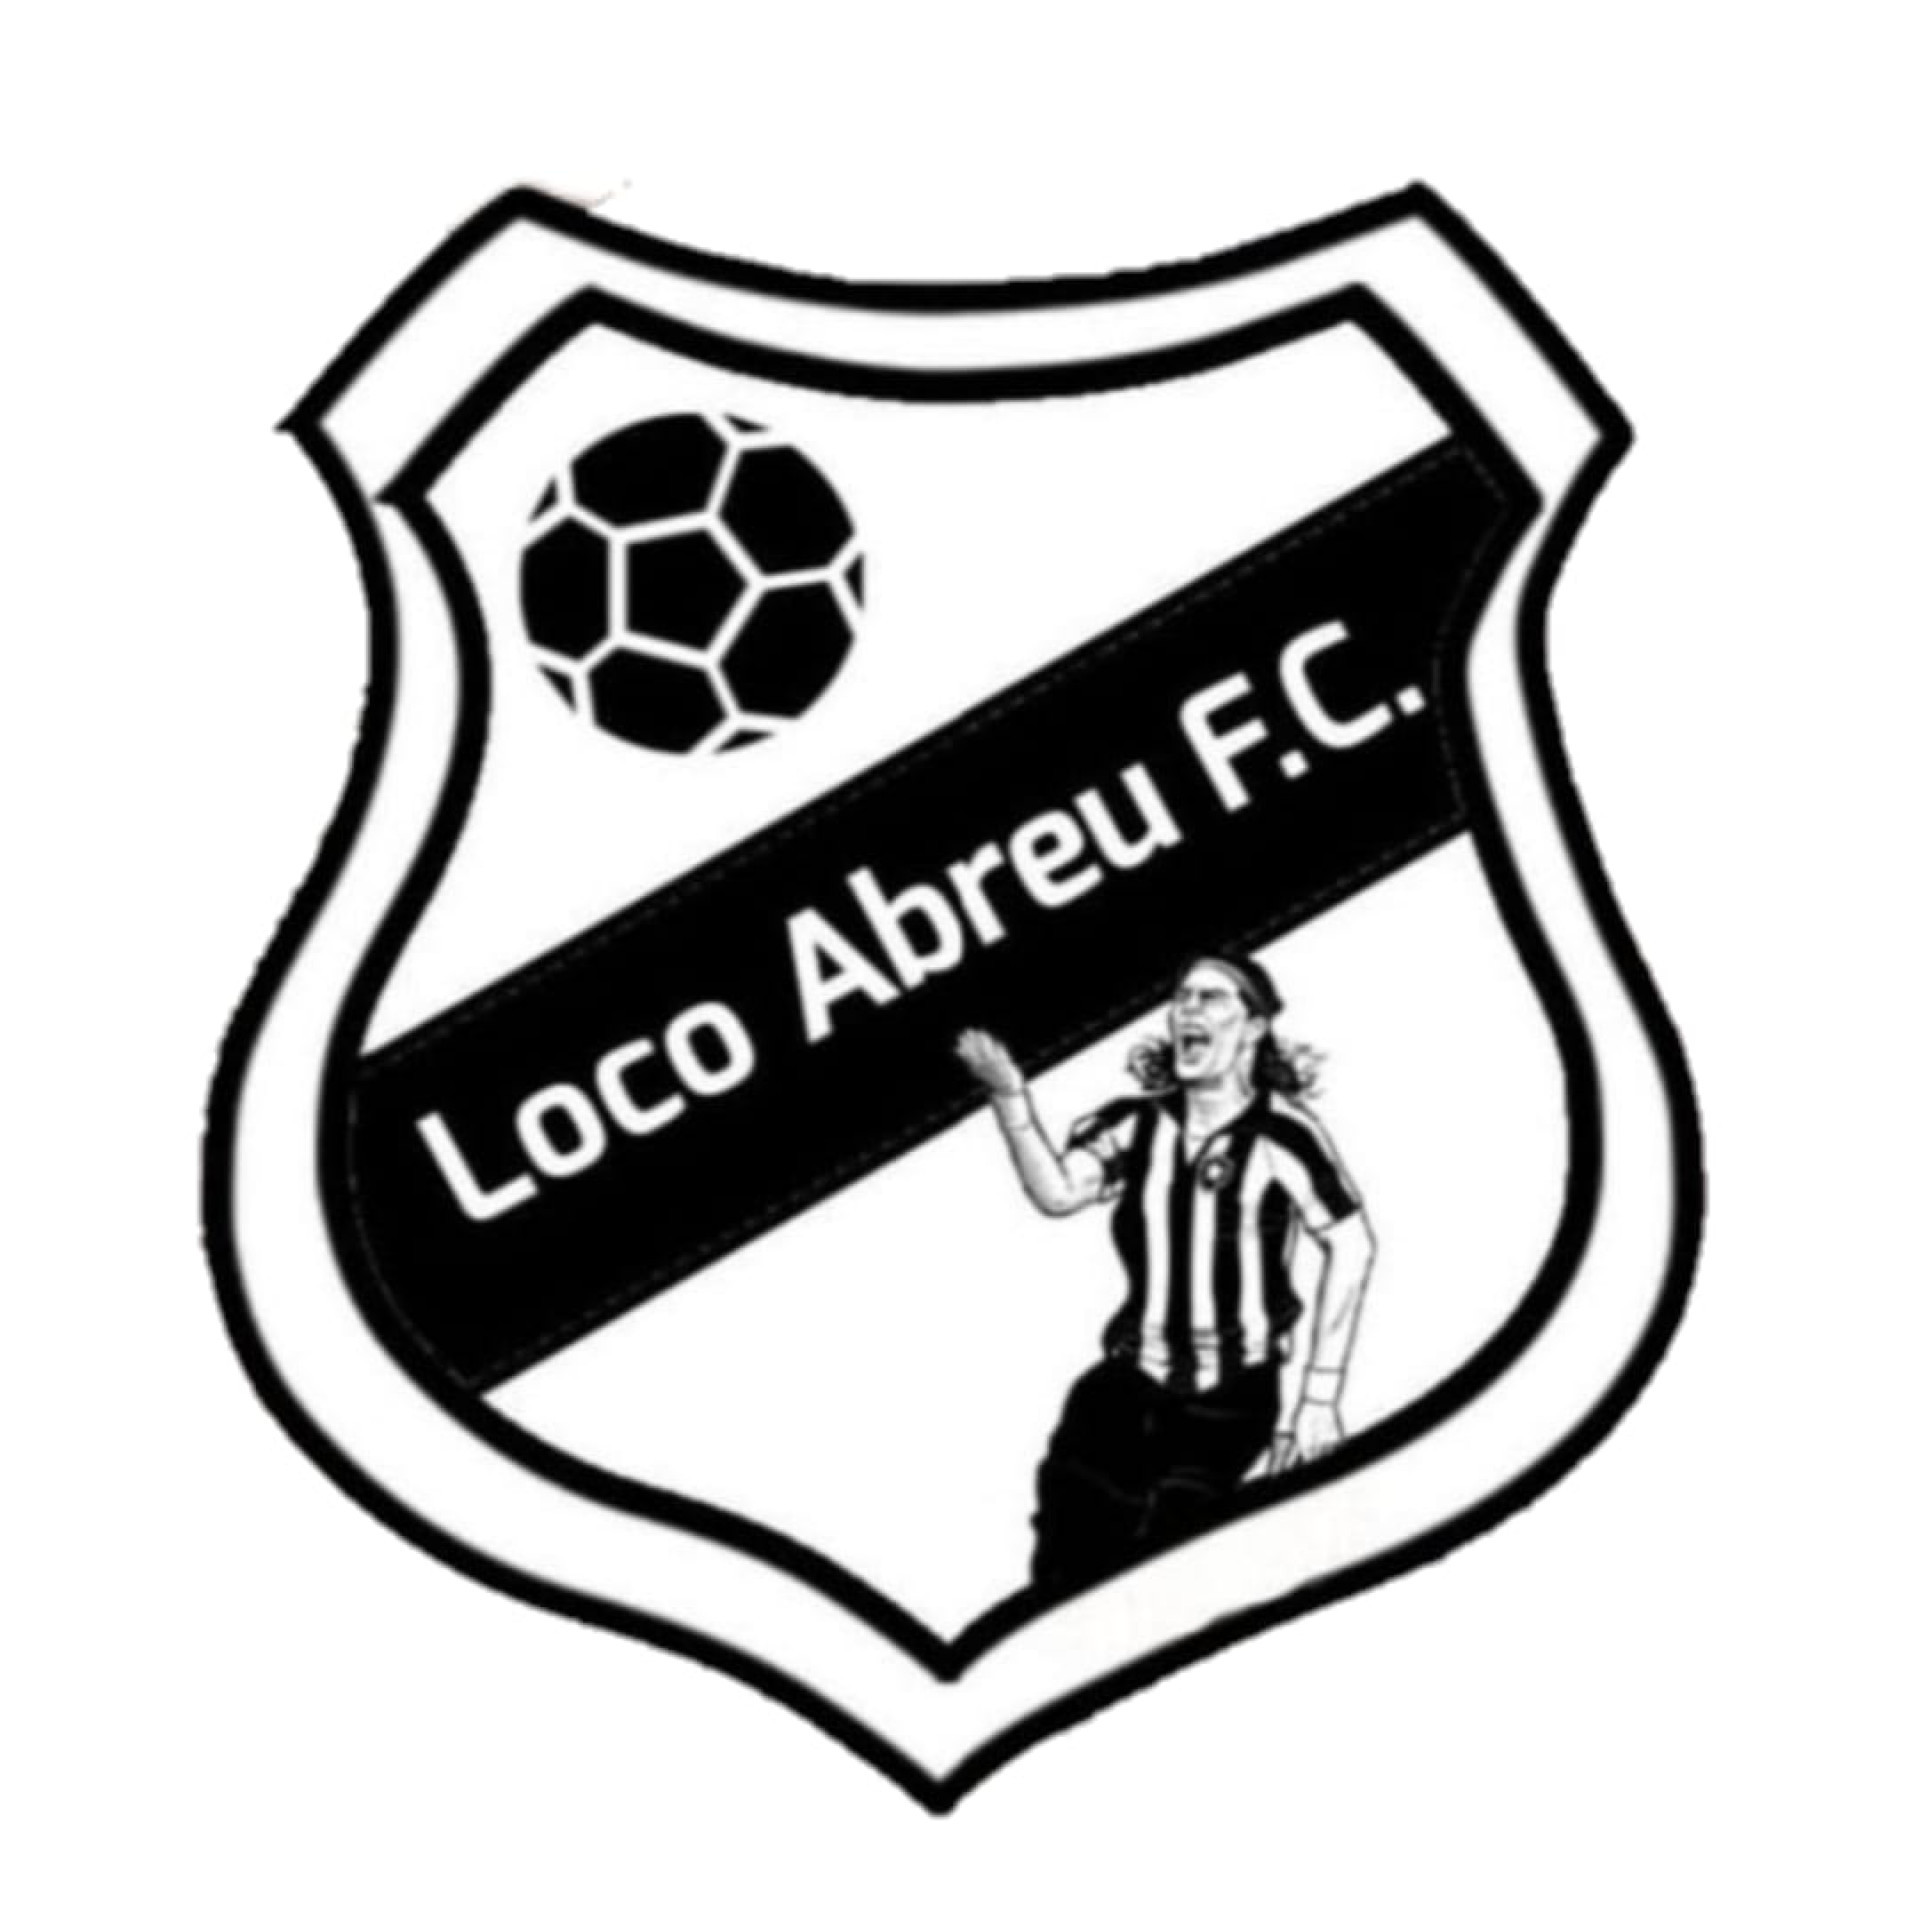 Loco Abreu Futebol Clube foi fundado no Piauí - Reprodução